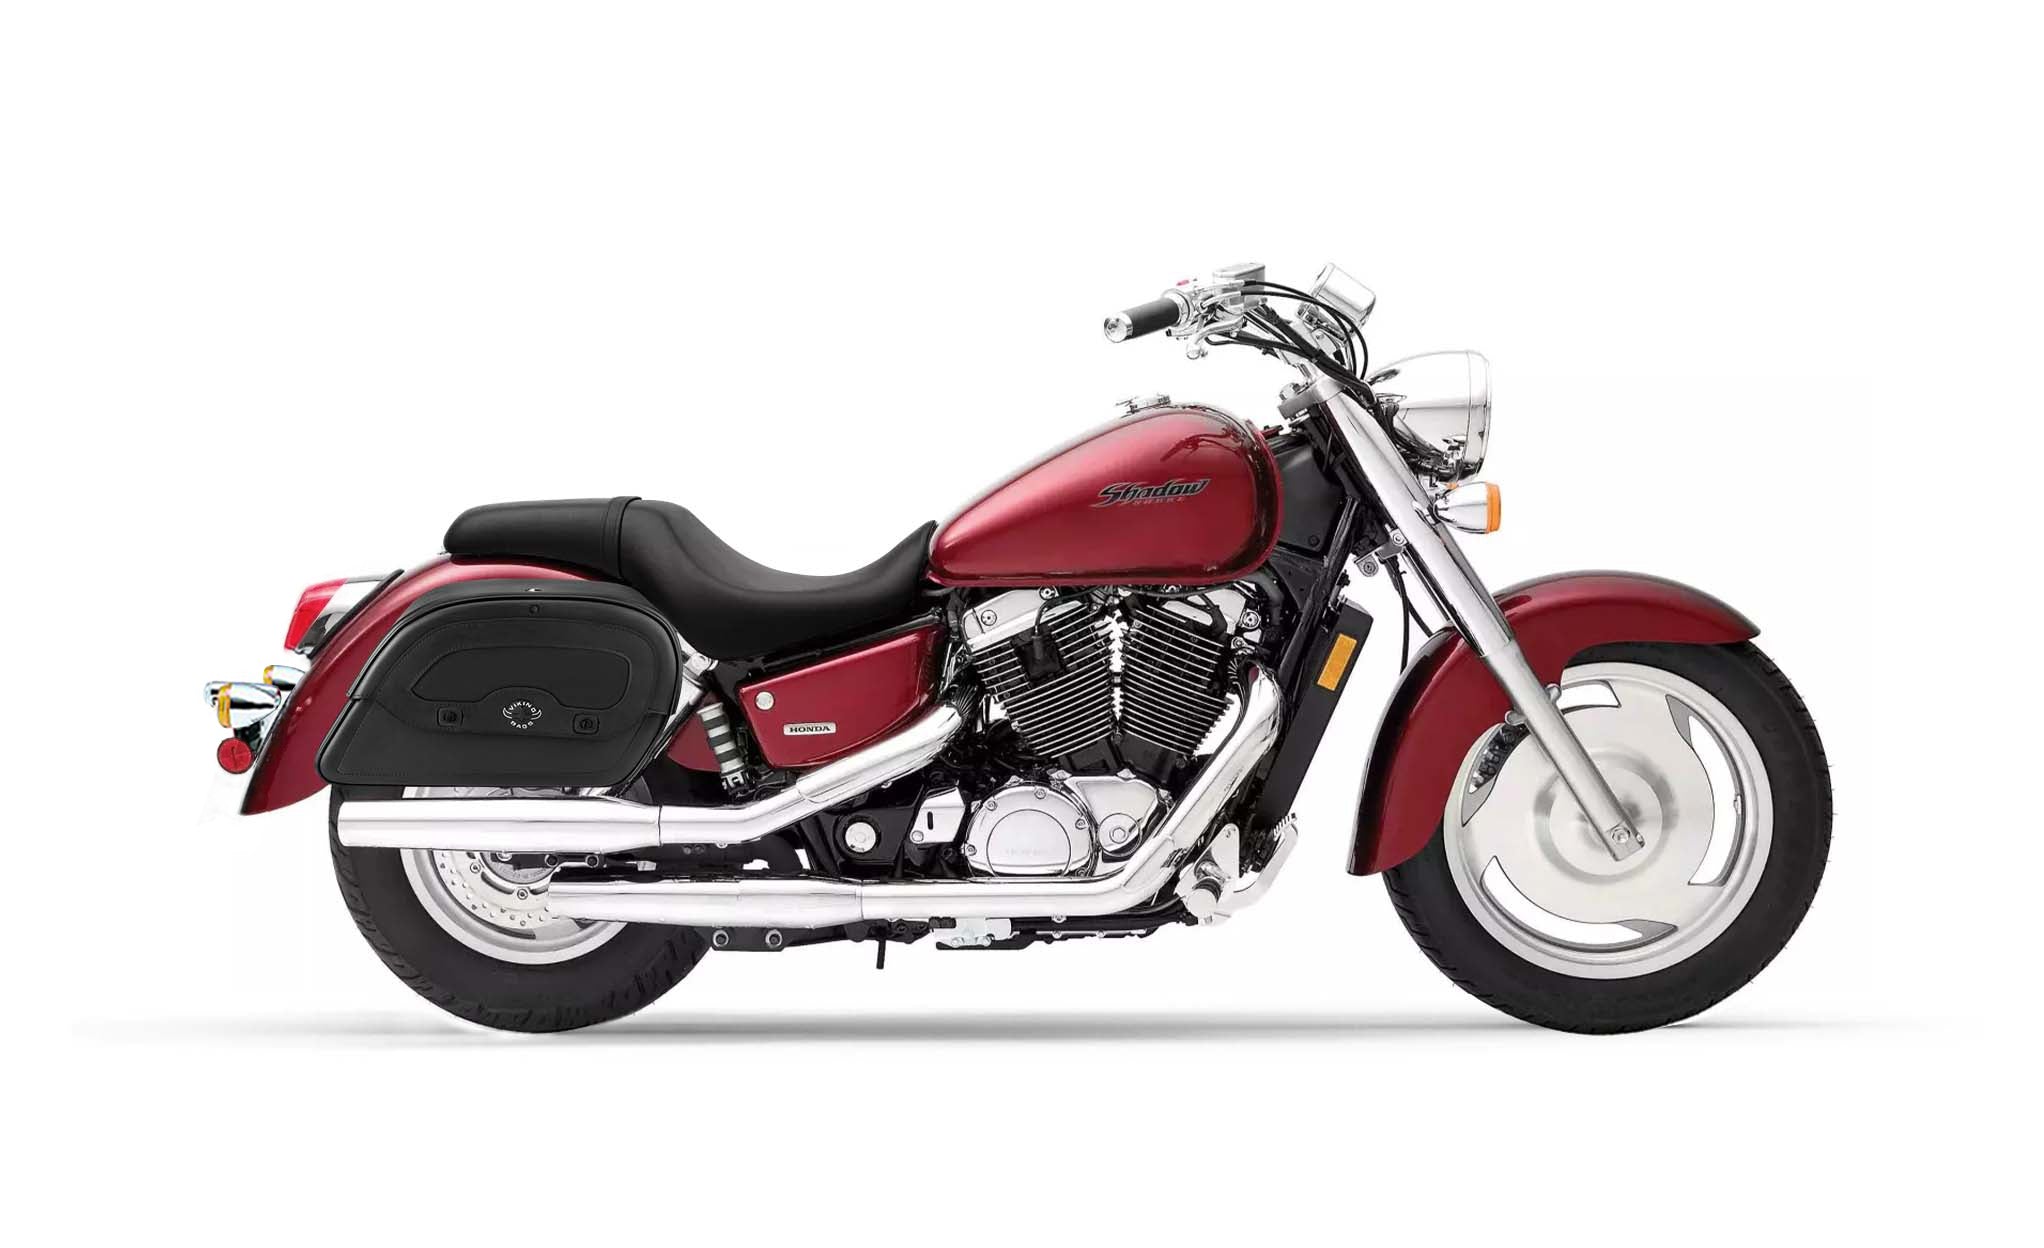 Viking Warrior Medium Honda Shadow 1100 Sabre Leather Motorcycle Saddlebags on Bike Photo @expand